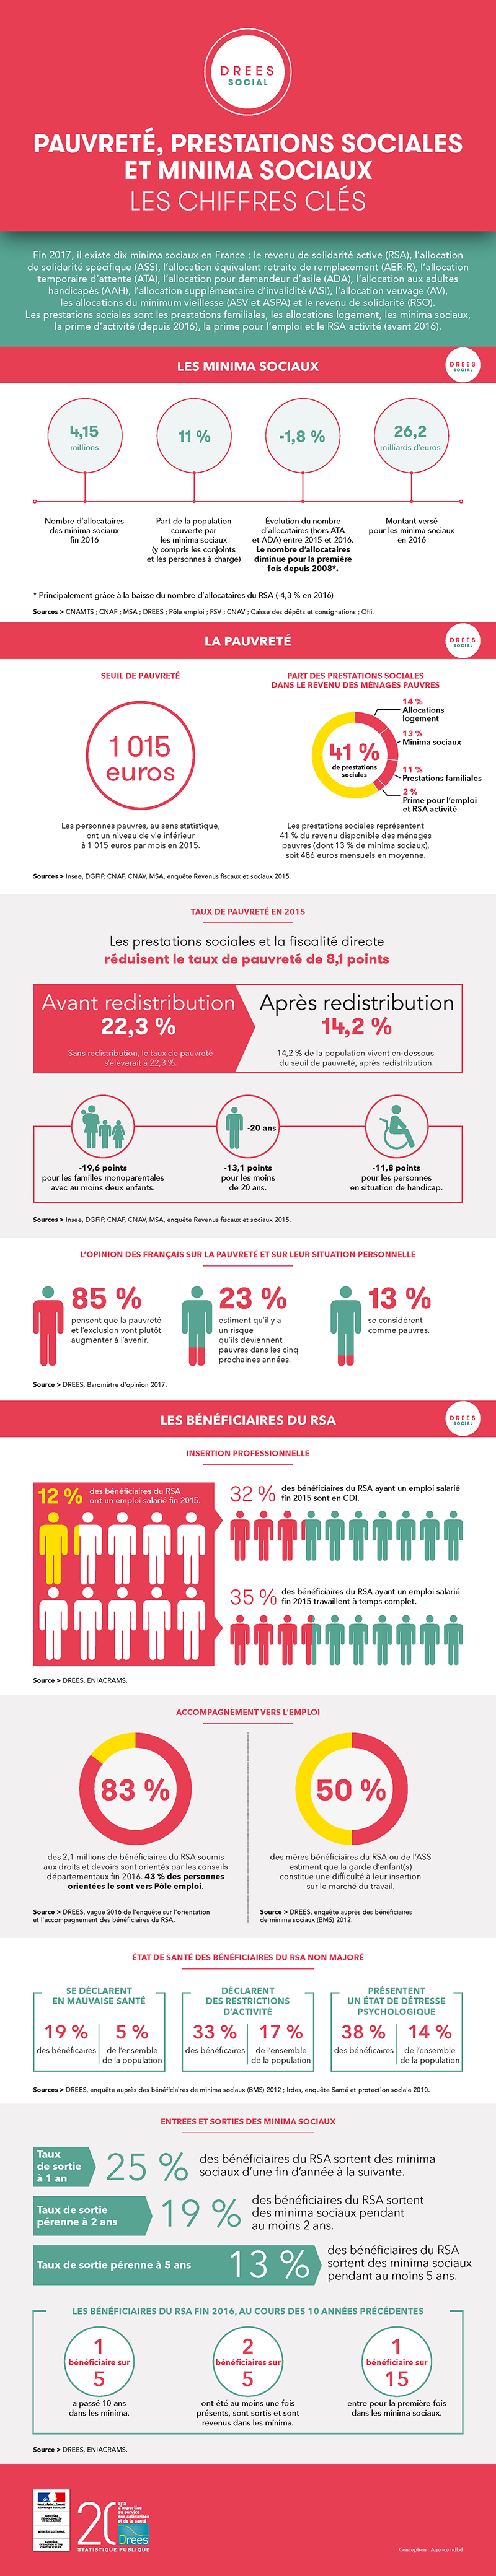 Infographie : Minima sociaux et prestations sociales - Les chiffres clés